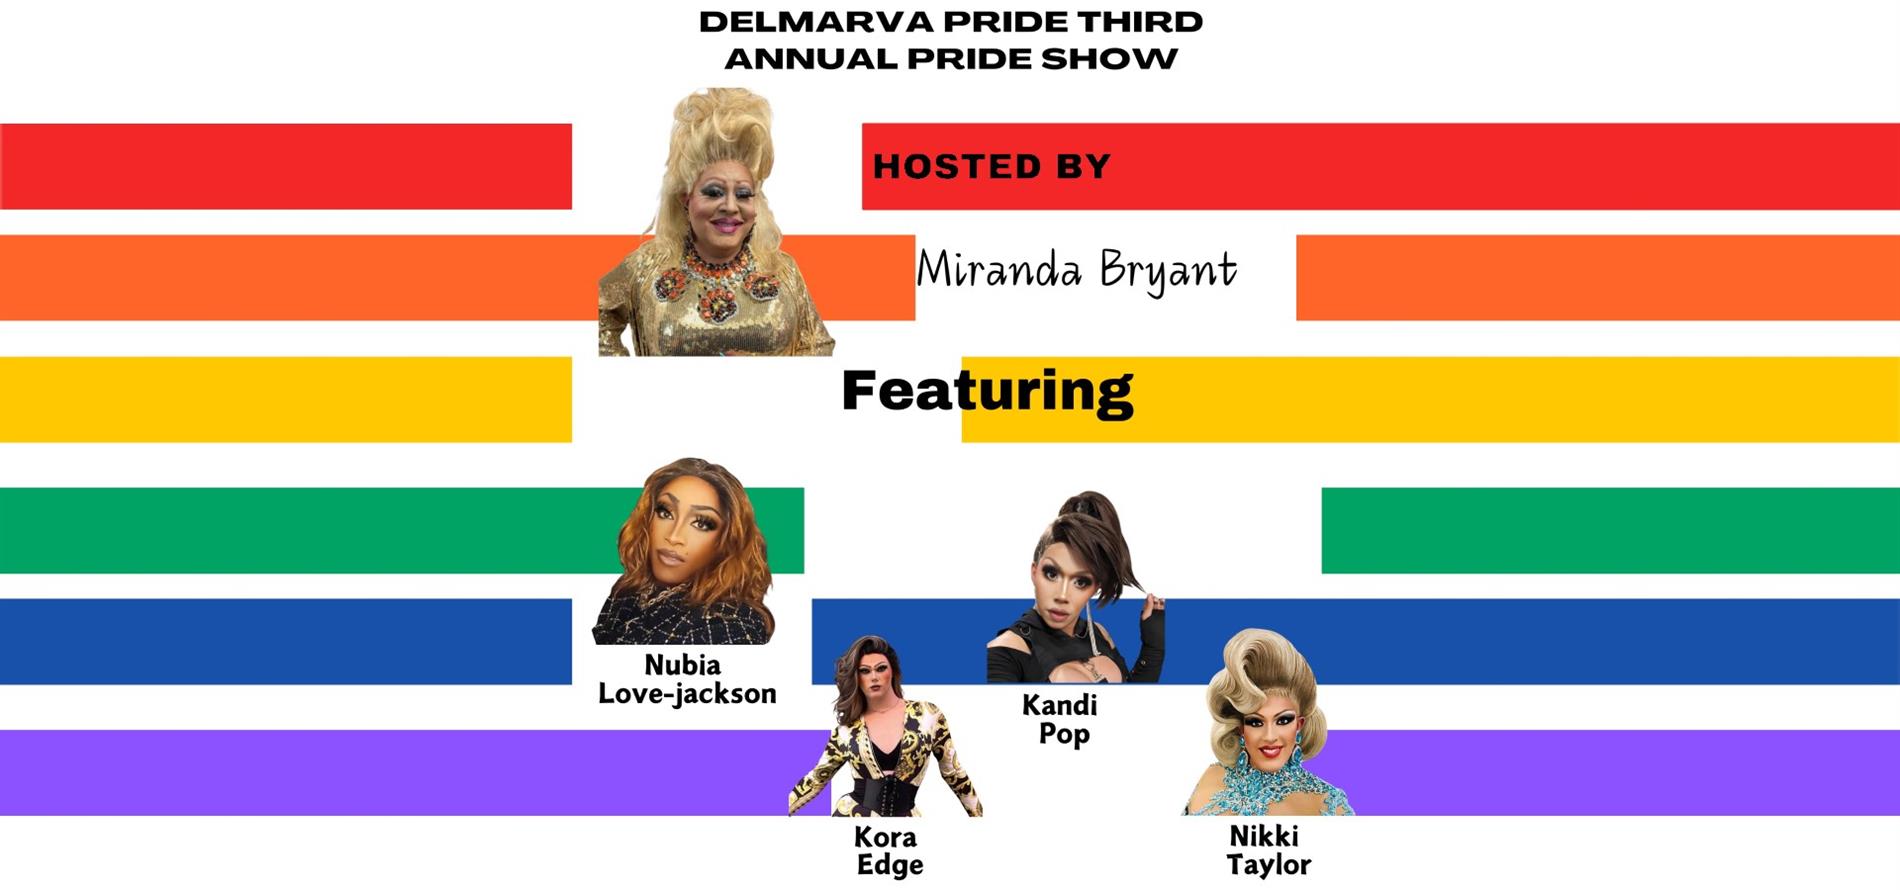 Delmarva Pride Center presents The 3rd Annual Pride Drag Show